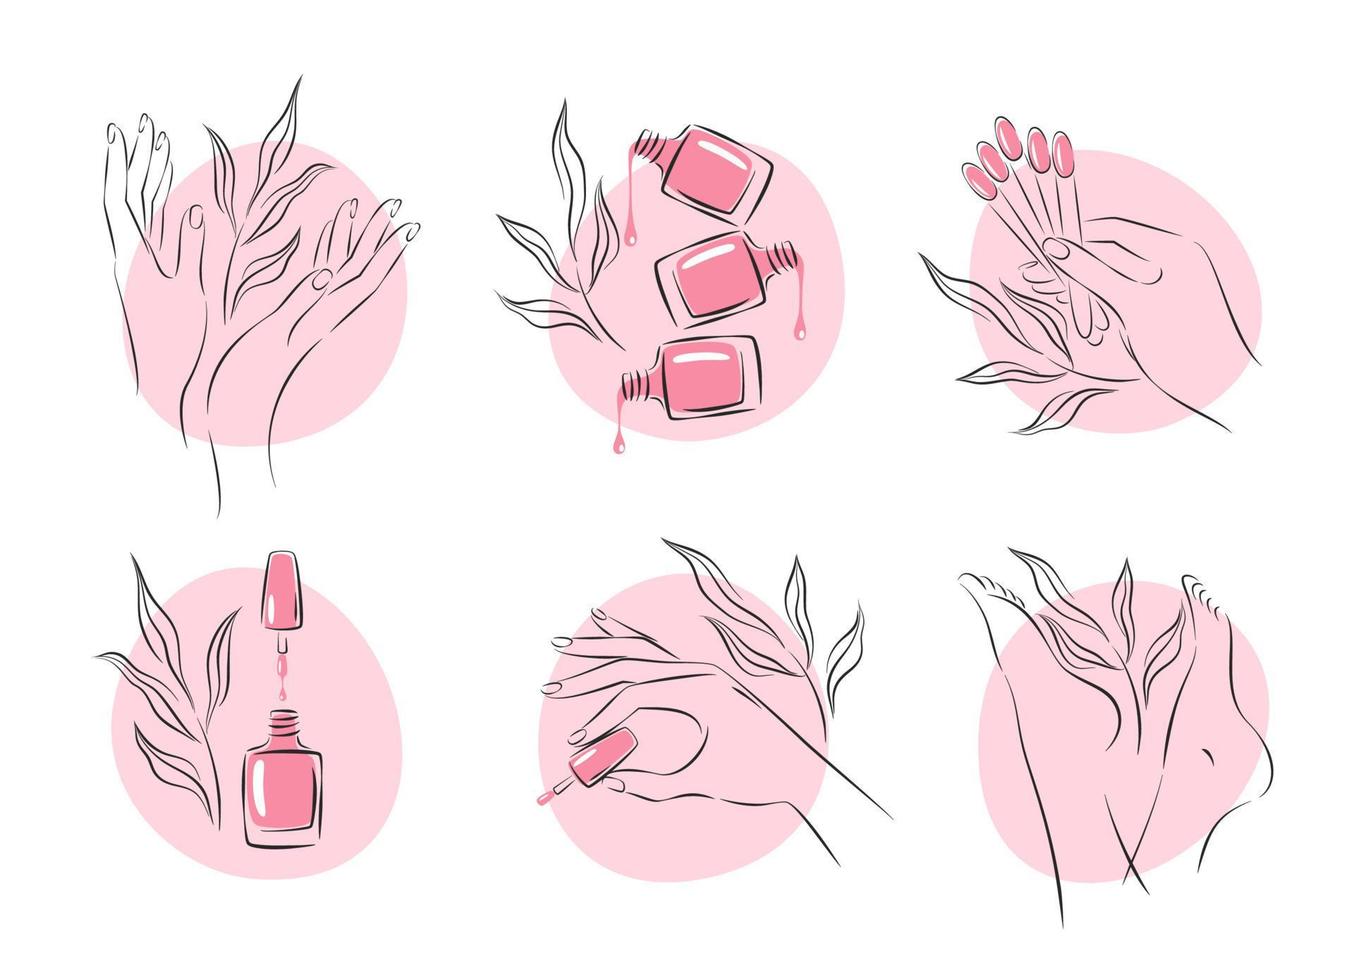 conjunto de elementos e iconos para estudio de uñas. esmalte de uñas, cepillo de uñas, manos y piernas femeninas cuidadas. ilustraciones vectoriales vector